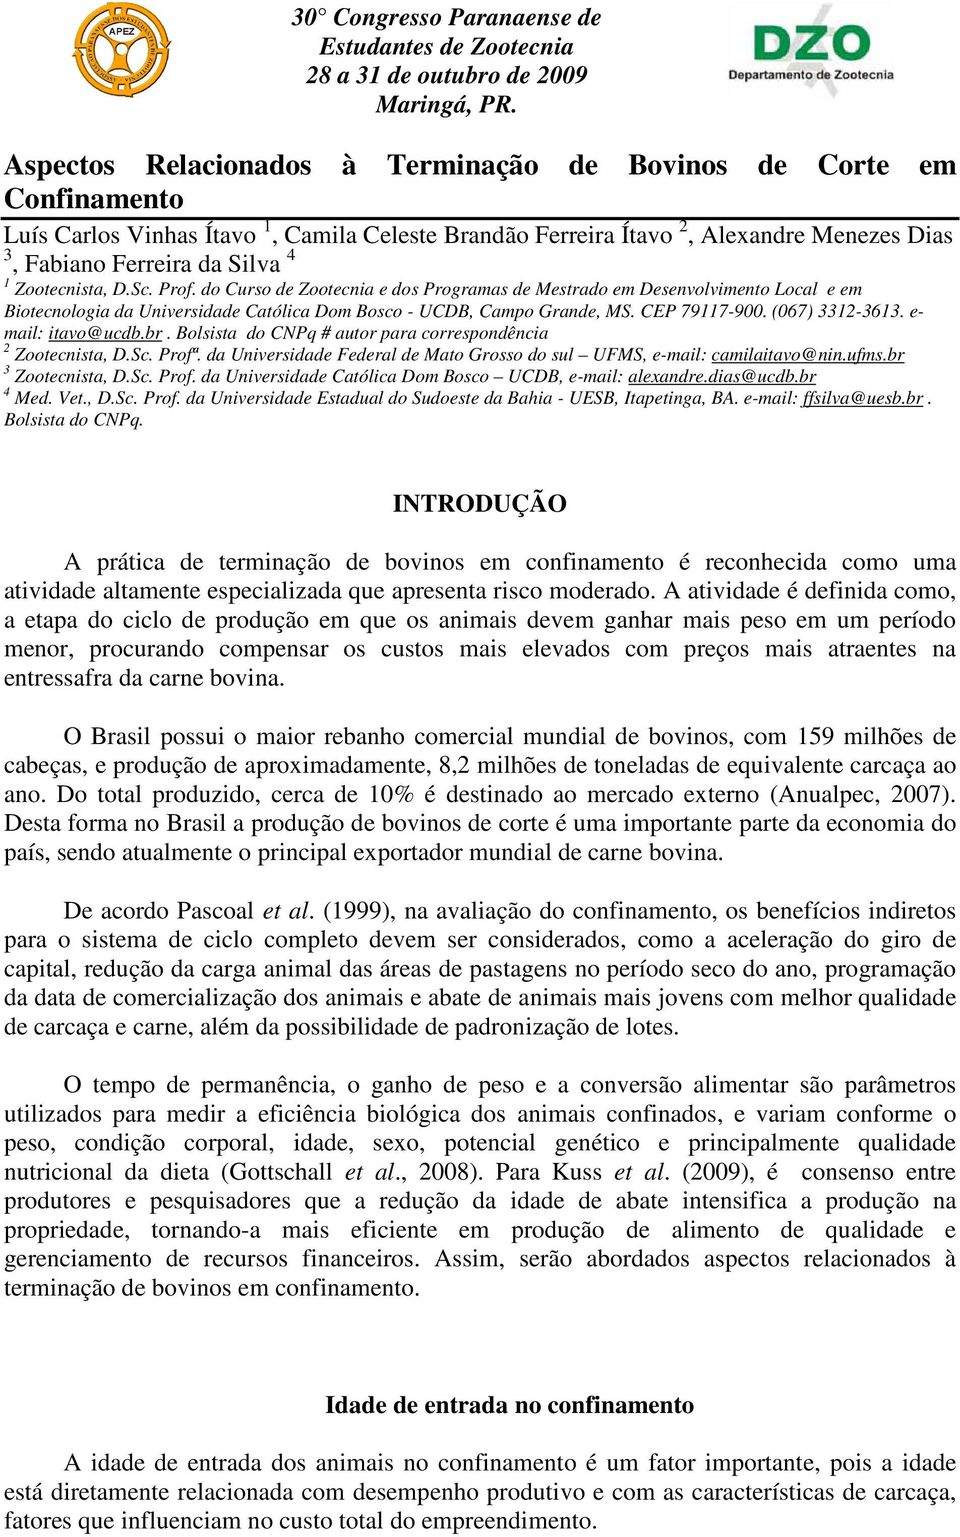 Zootecnista, D.Sc. Prof. do Curso de Zootecnia e dos Programas de Mestrado em Desenvolvimento Local e em Biotecnologia da Universidade Católica Dom Bosco - UCDB, Campo Grande, MS. CEP 79117-900.